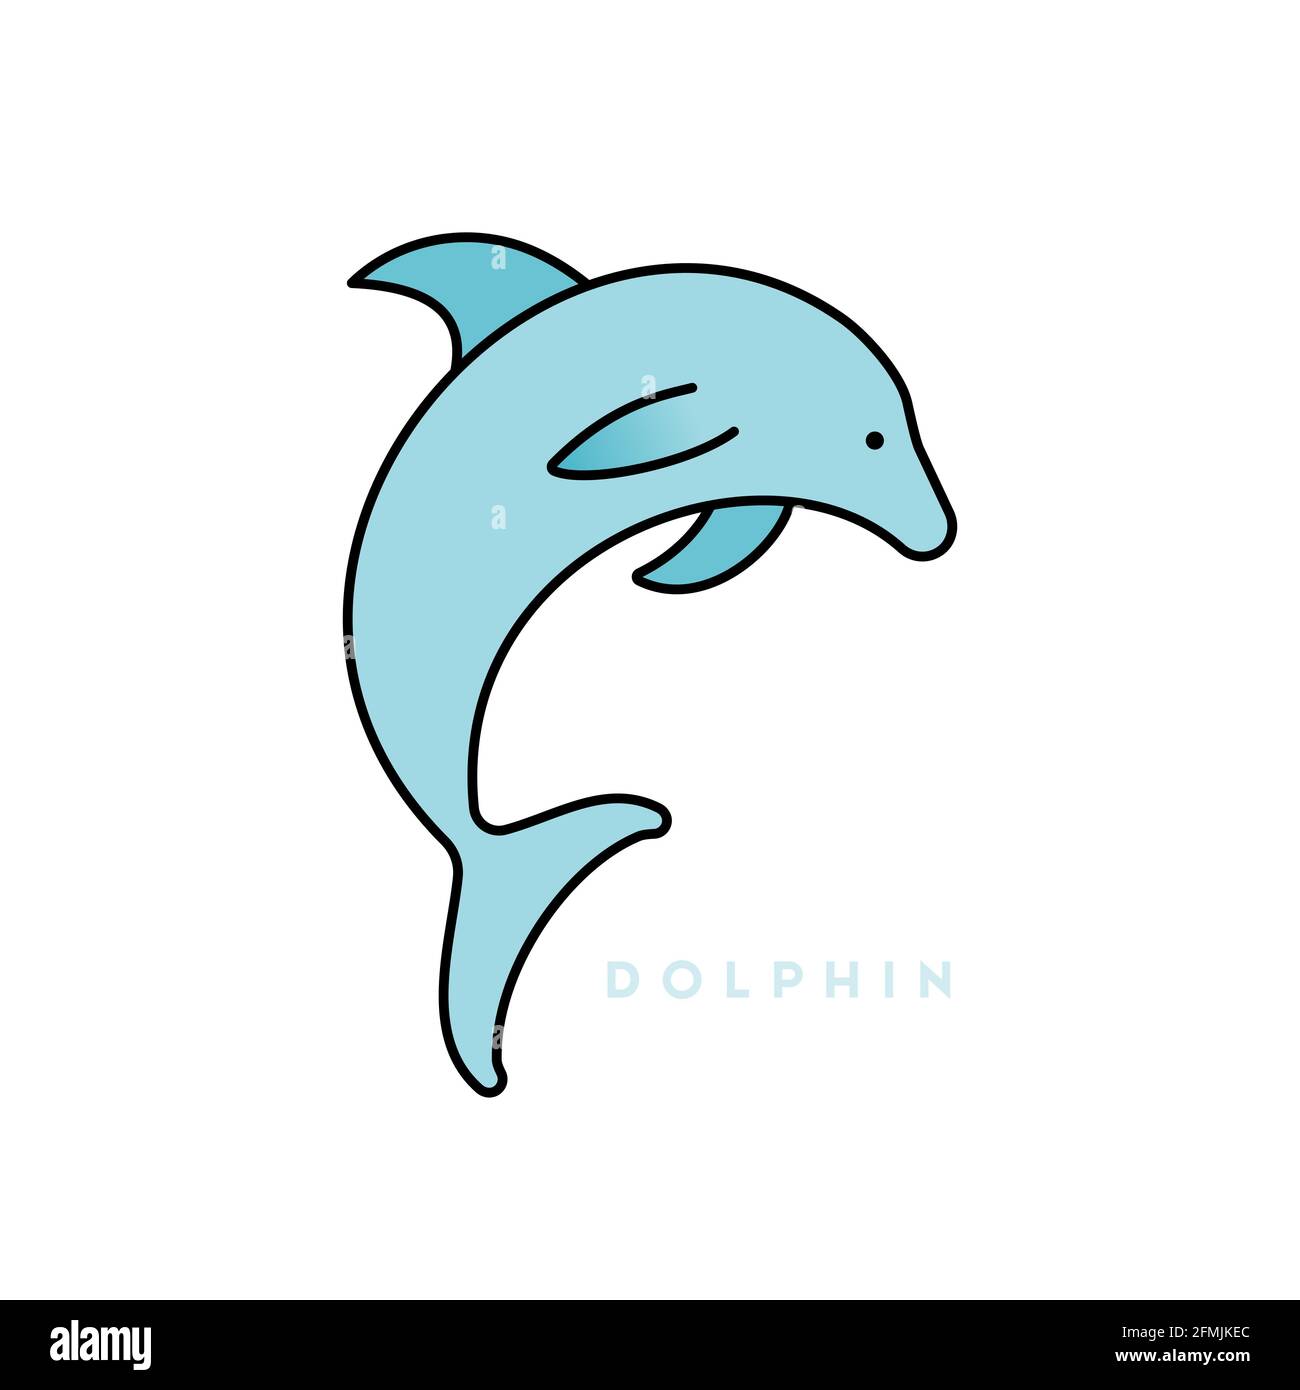 Springender Delphin. Ausgefülltes Symbol. Schwarzer Umriss. Vektorgrafik, flaches Design Stock Vektor